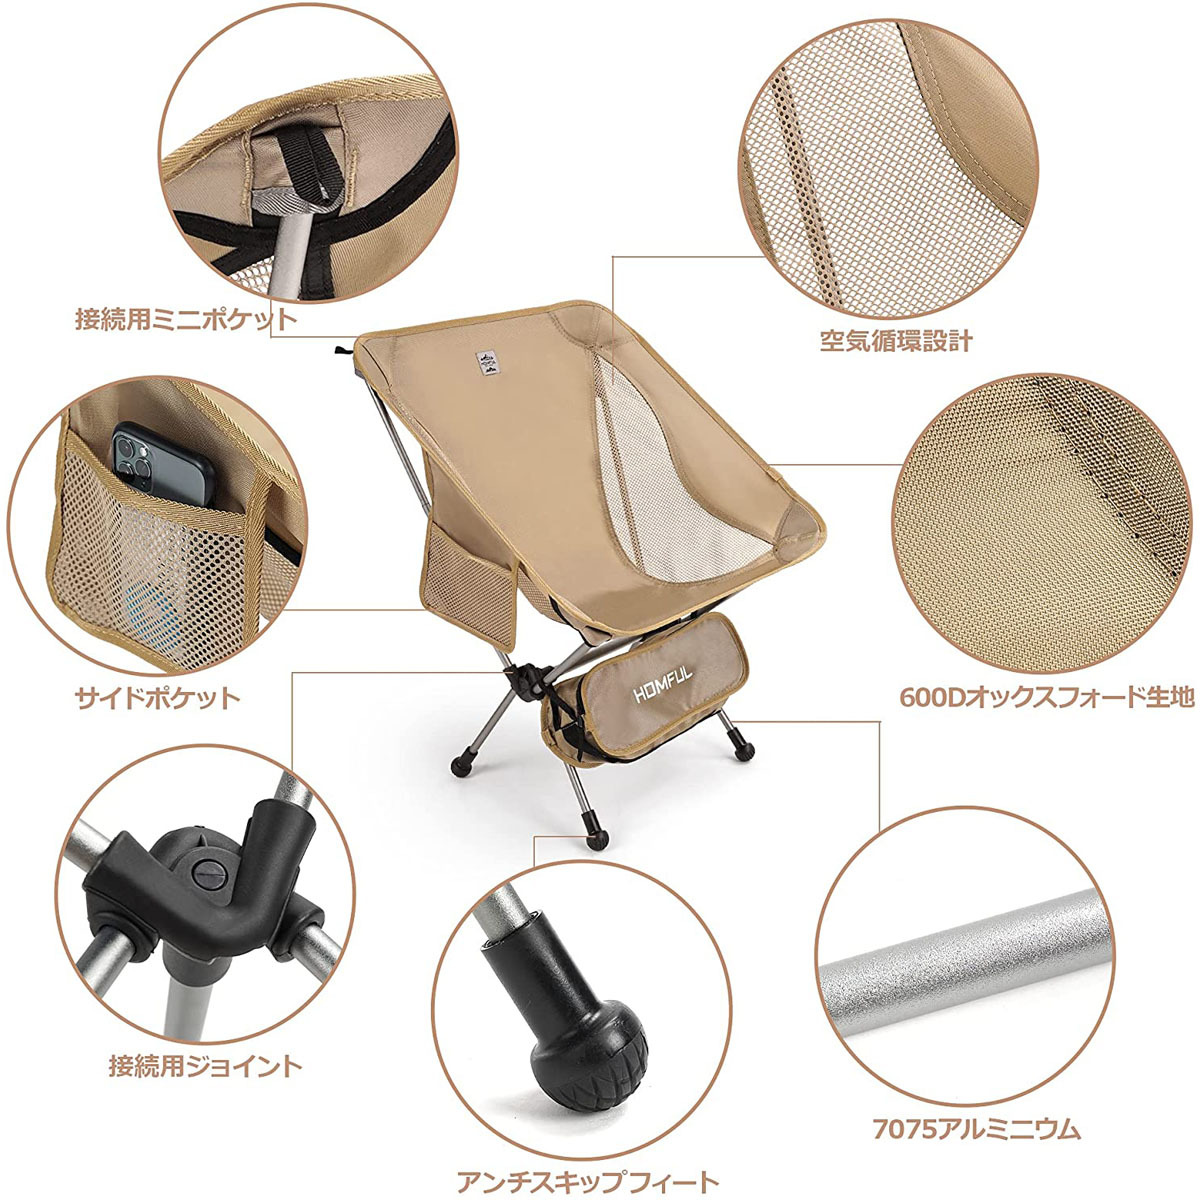 アウトドアチェア2脚セット 折りたたみ椅子 軽量 コンパクト 組み立て簡単 収納袋付き 耐荷重約100kg サイドポケットあり キャンプ カーキ